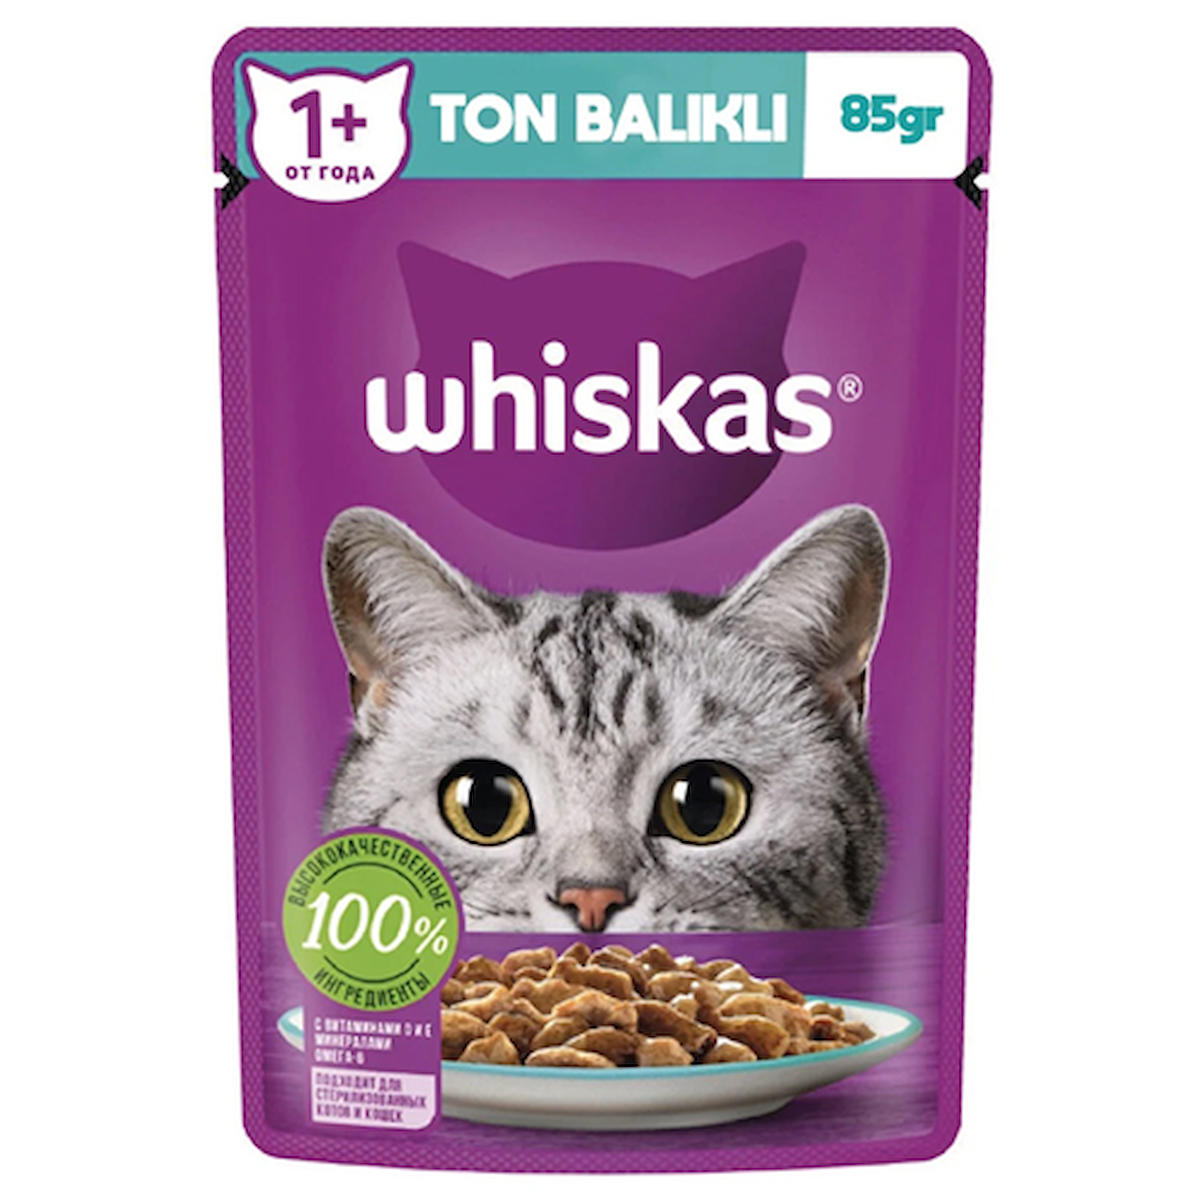 Whiskas 1+ Ton Balıklı Yetişkin Yaş Kedi Maması 12x85 gr